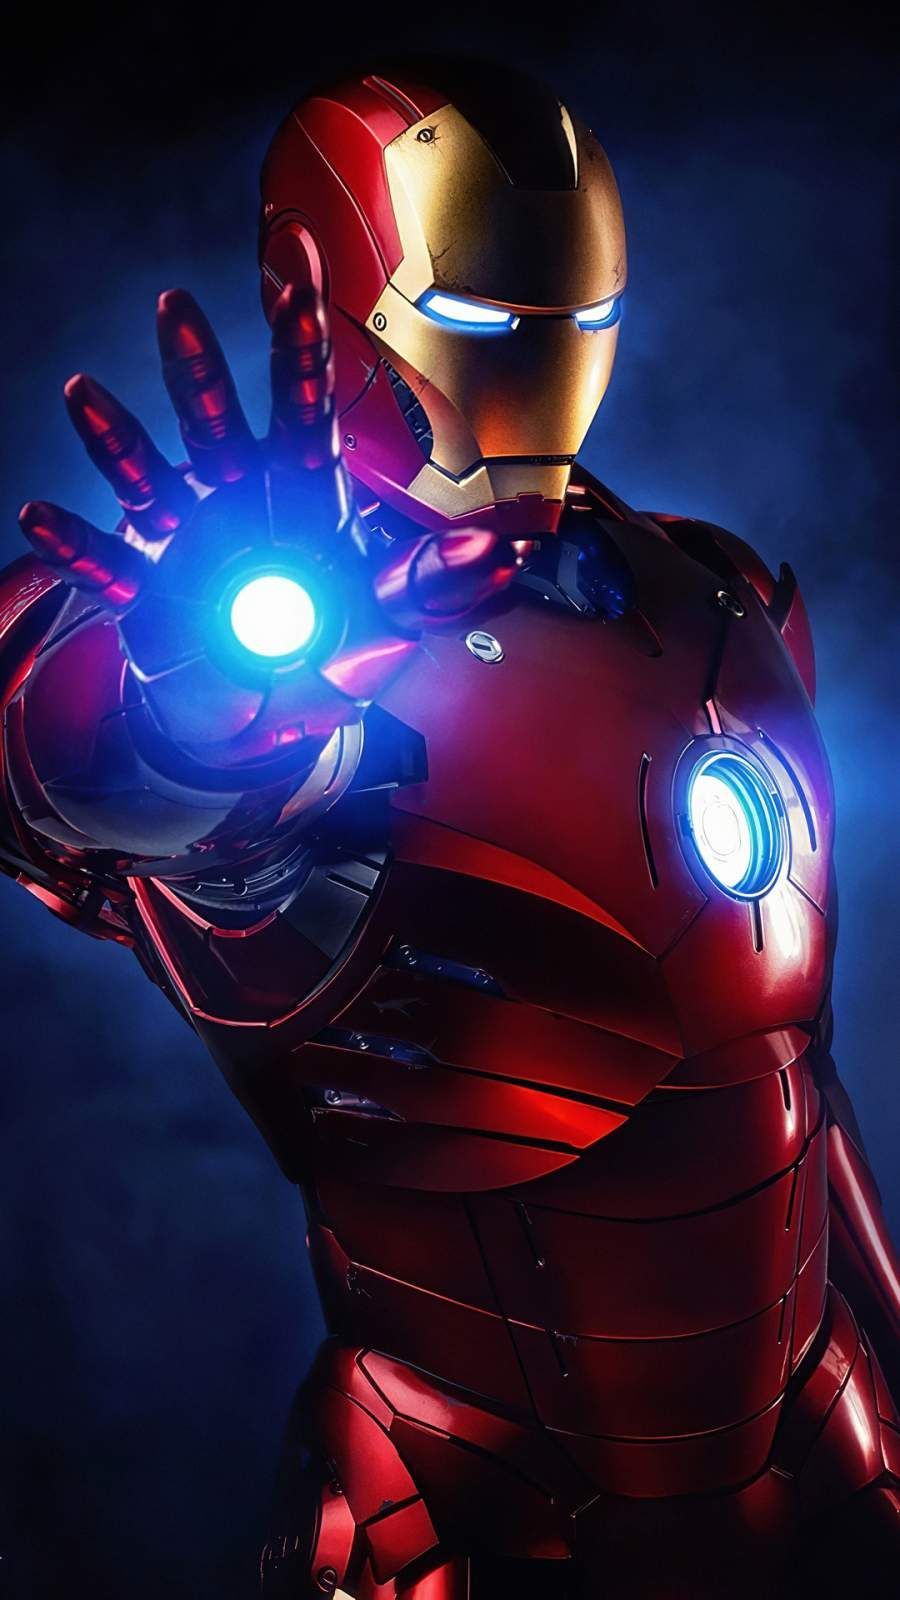 Iron Man Armor 4K iPhone Wallpaper 1 .com